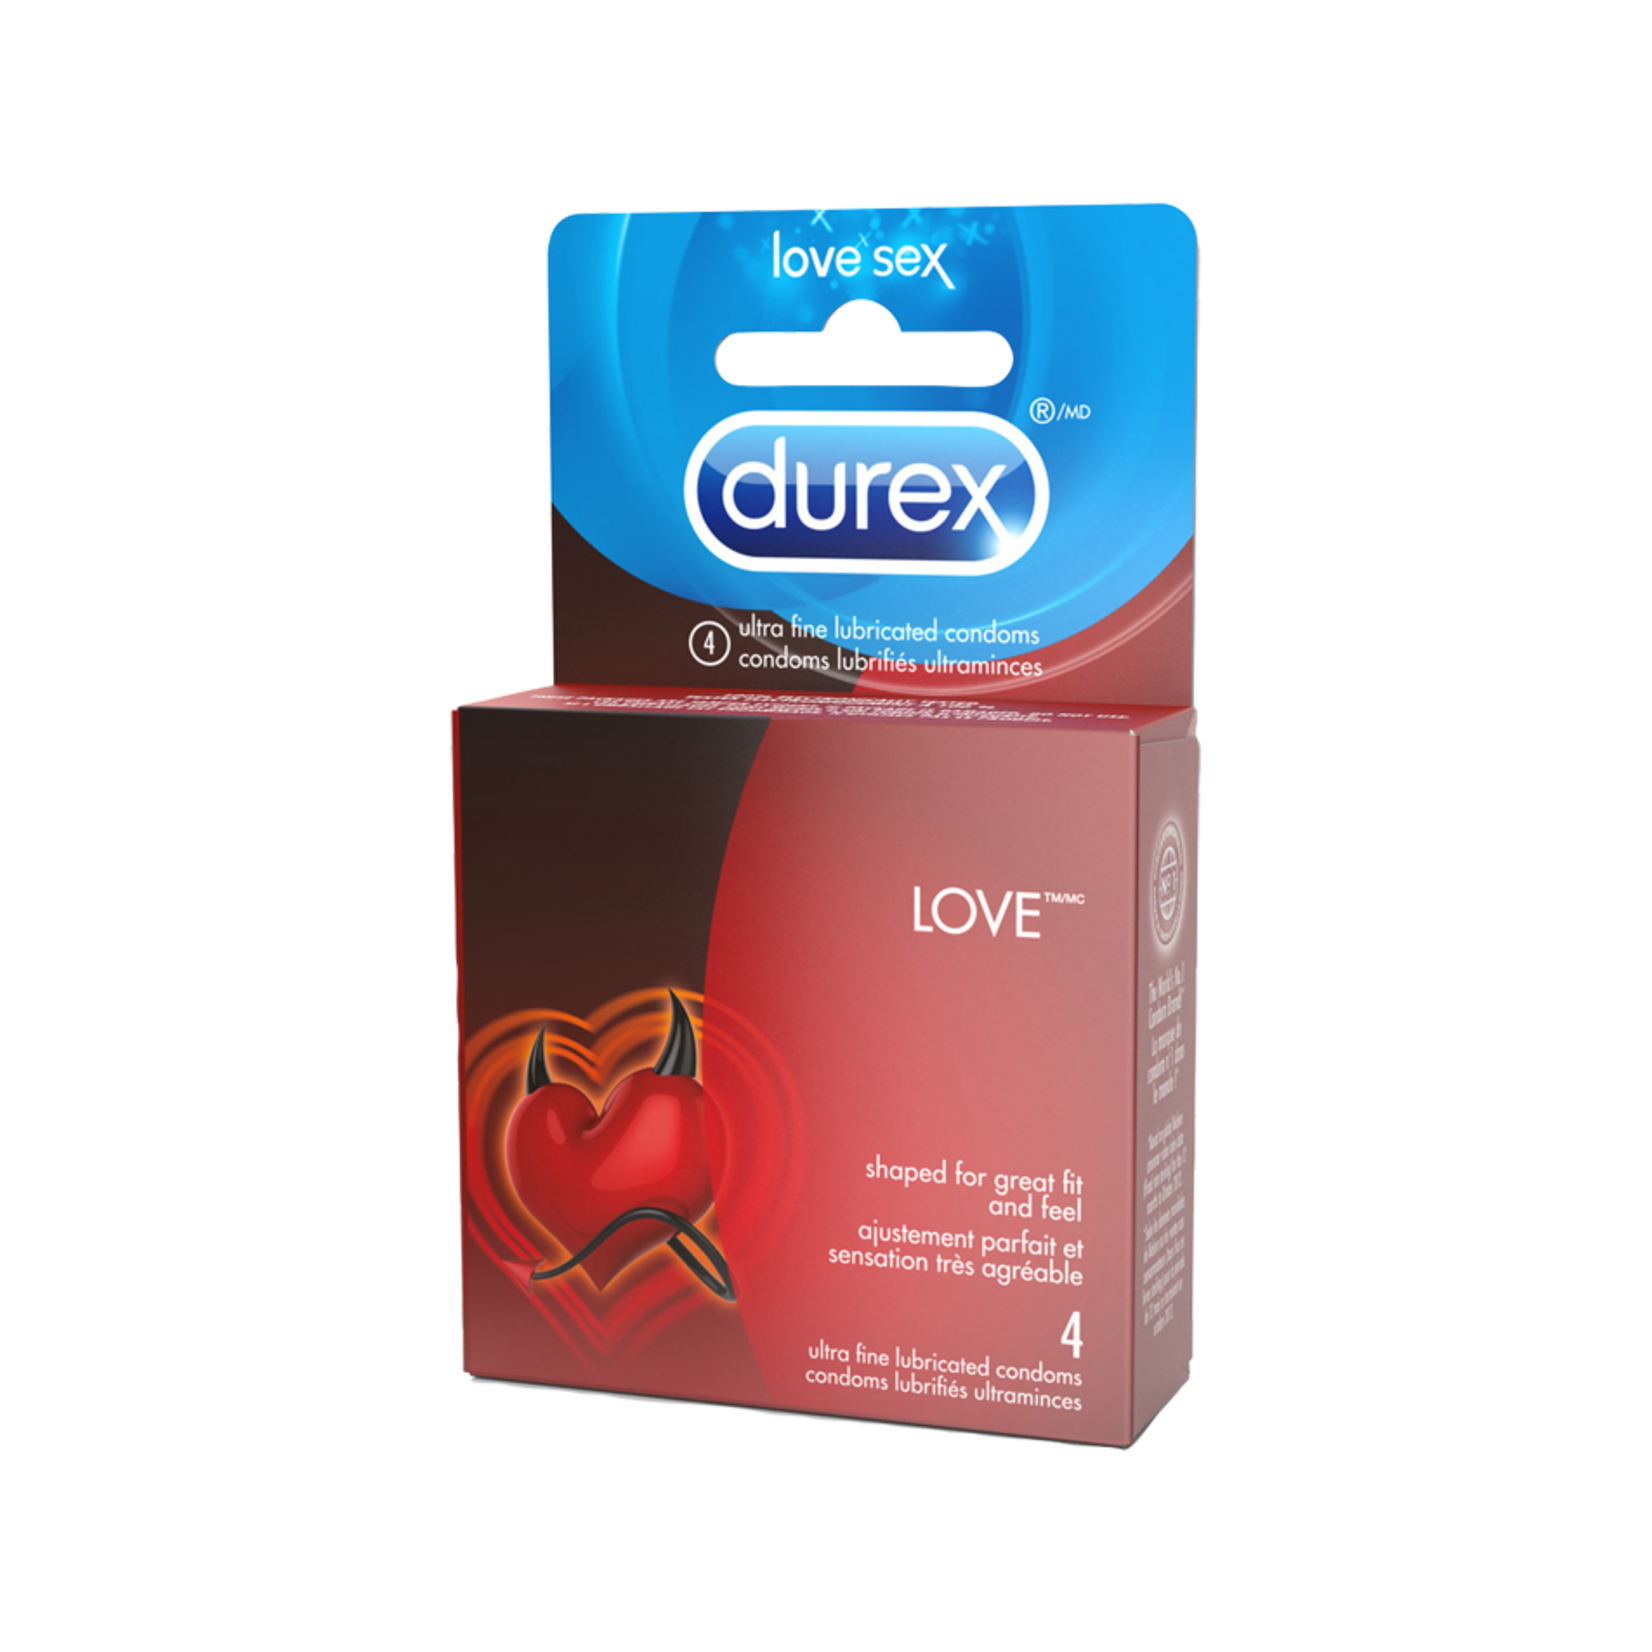 DUREX CONDOMS AND DUREX PLAY DUREX - LOVE x4